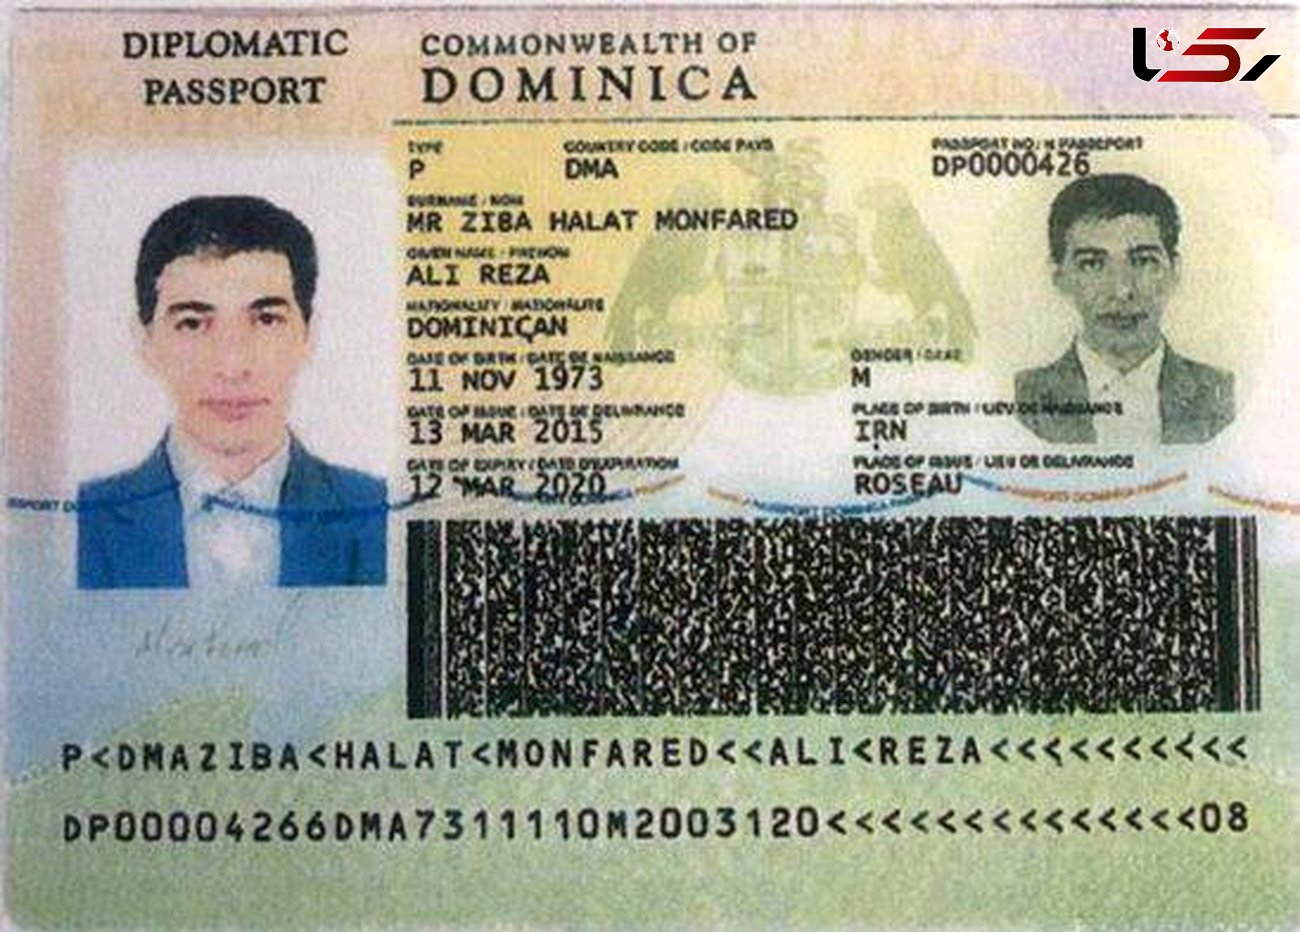 عکس پاسپورت شریک نامرئی بابک زنجانی را ببینید / از این مرد در تهران تحقیق شد